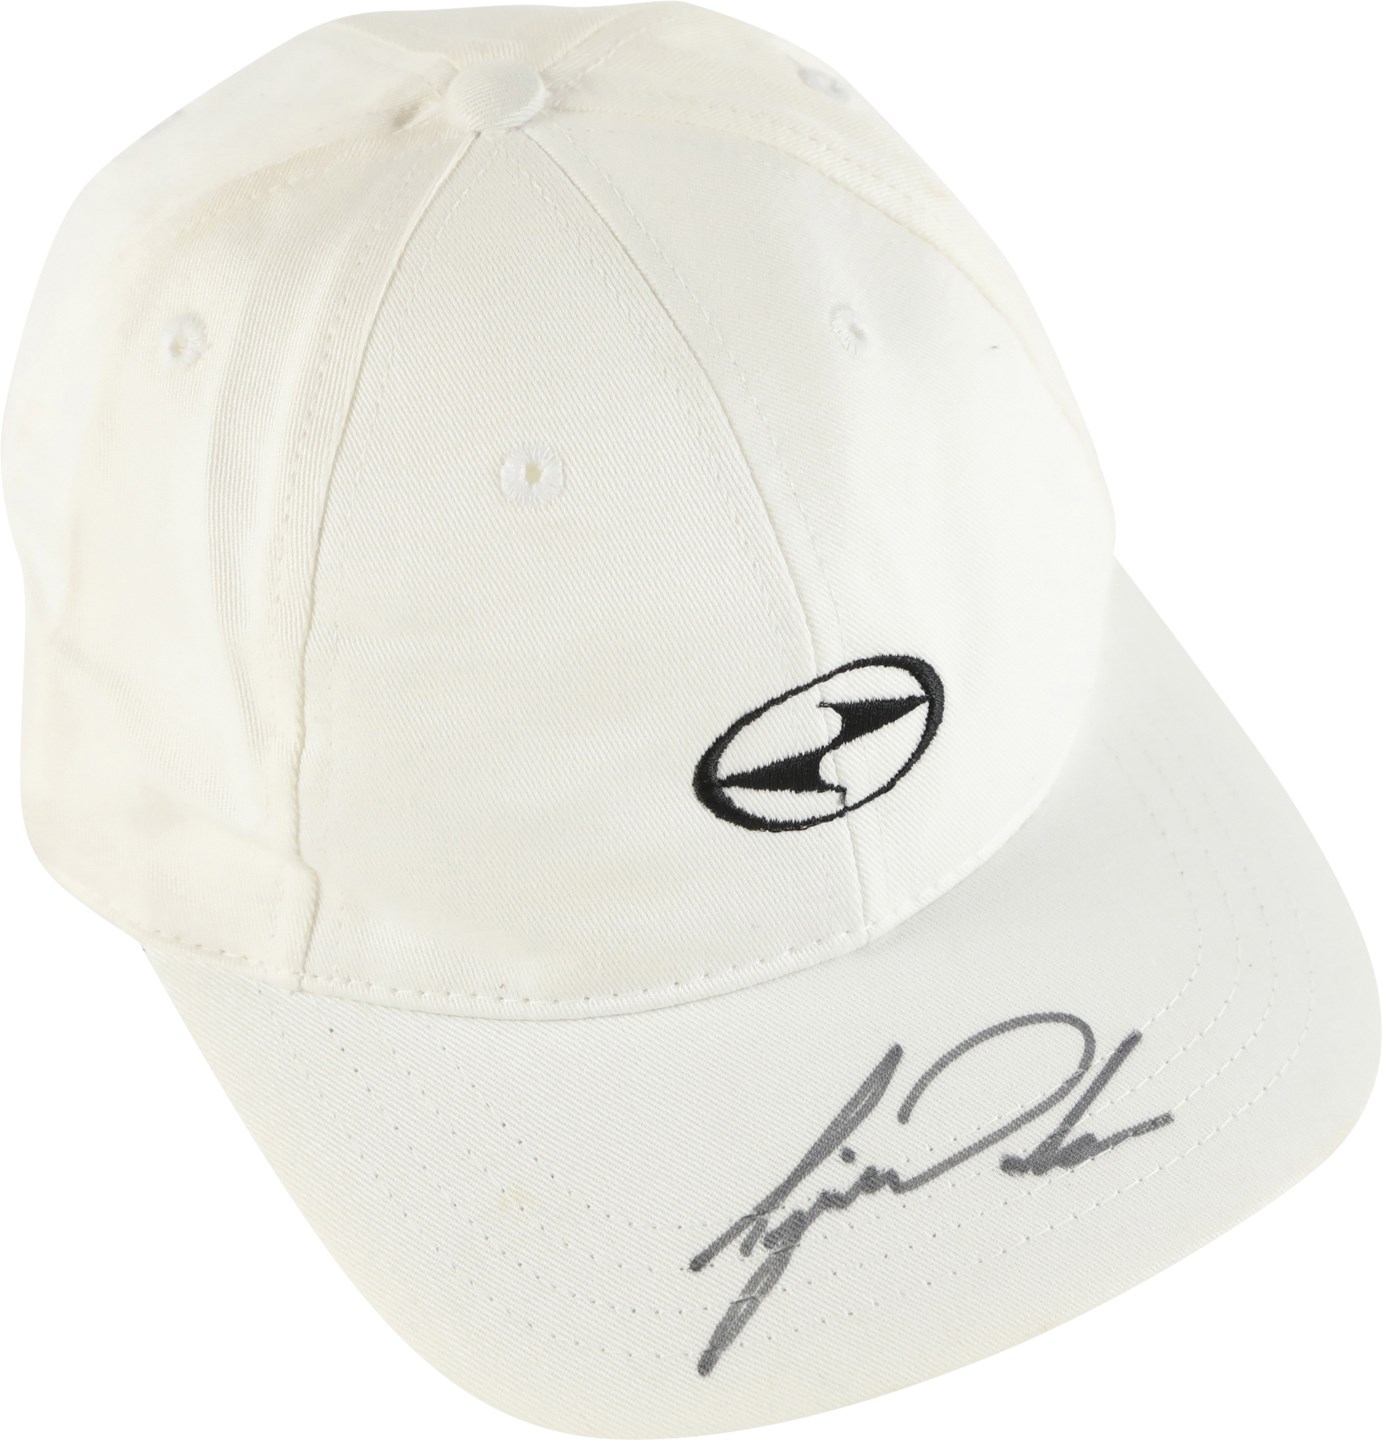 - Tiger Woods Signed Nike Golf Hat (PSA & JSA)